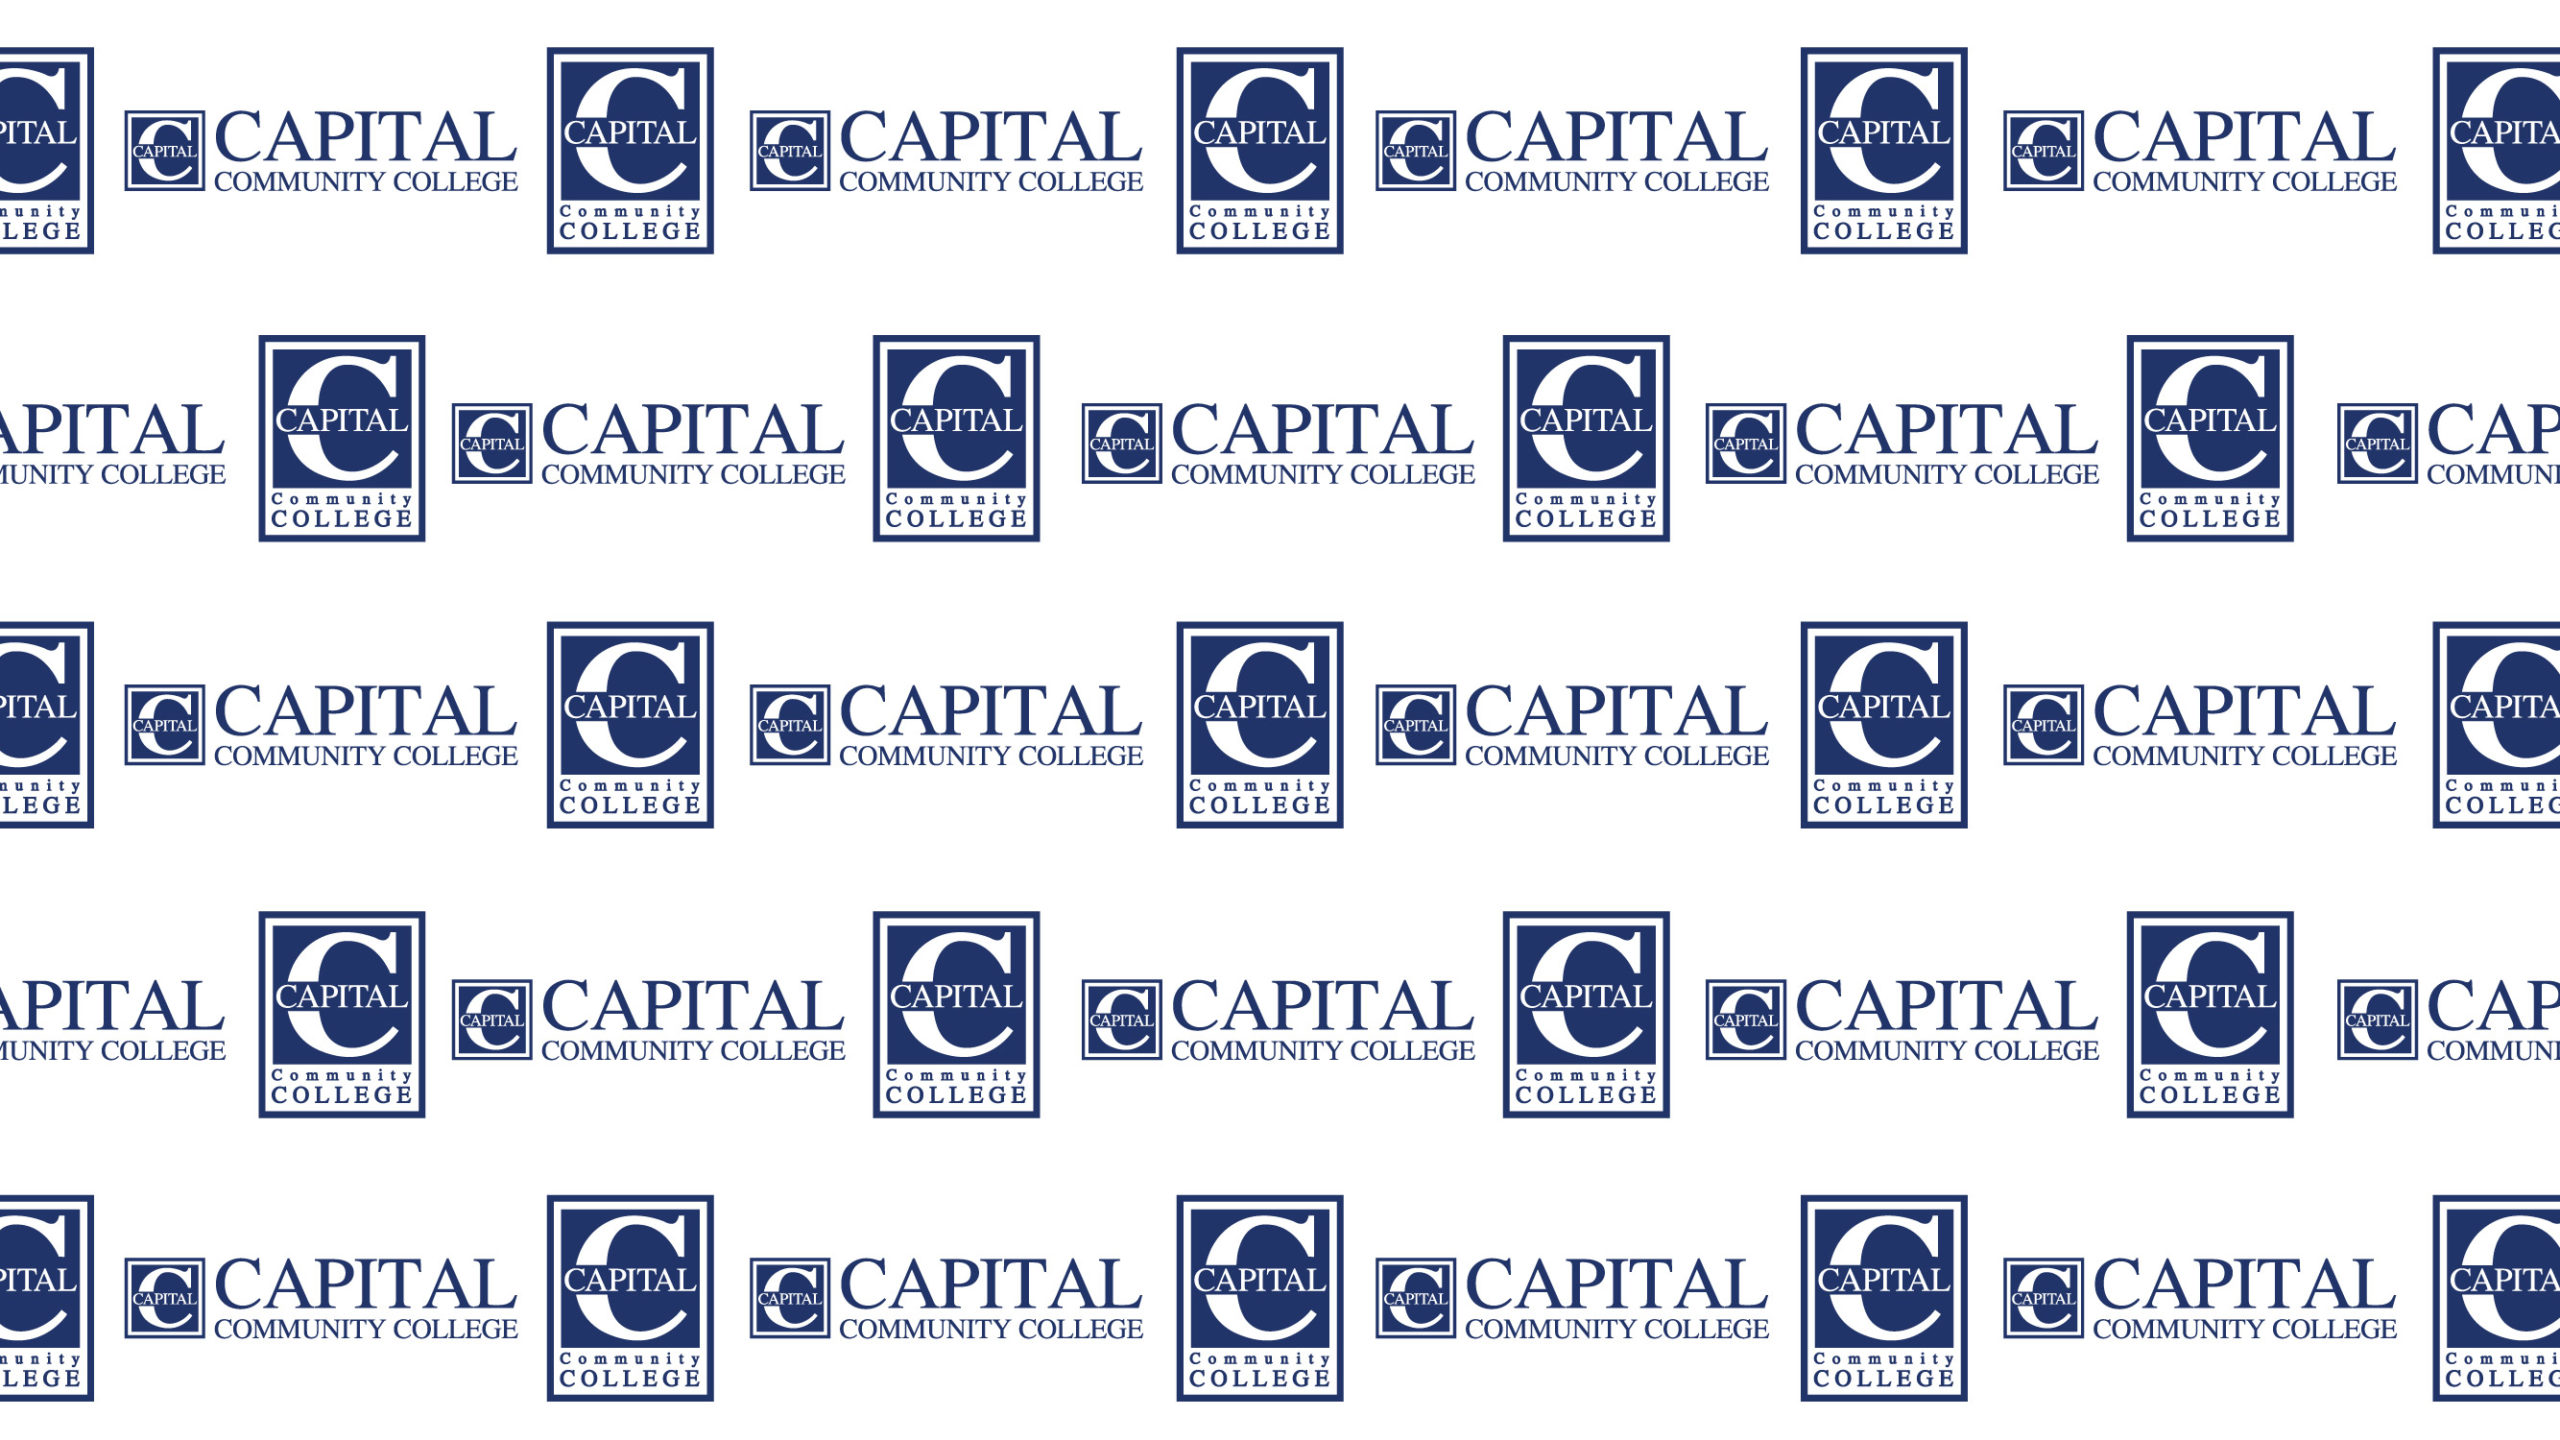 Capital Background (WebEX 1280 x 720 px)